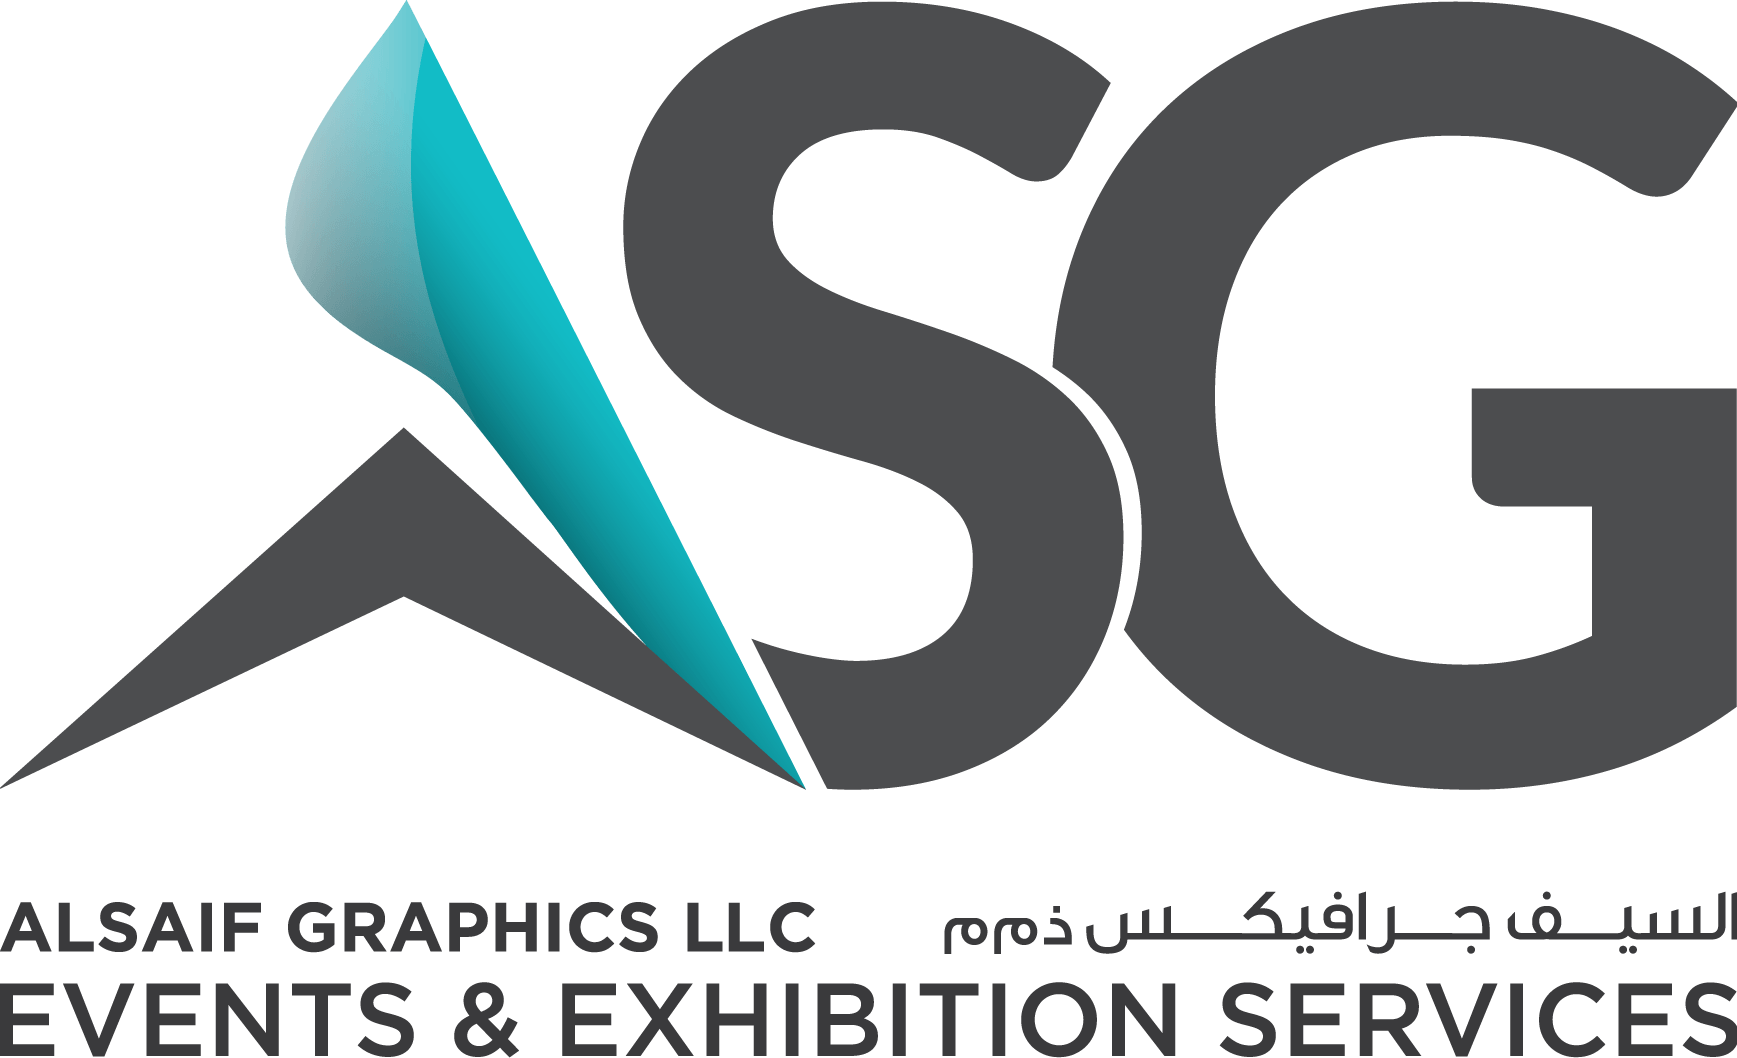 ASG Logo - ASG Events & Exhibition Services